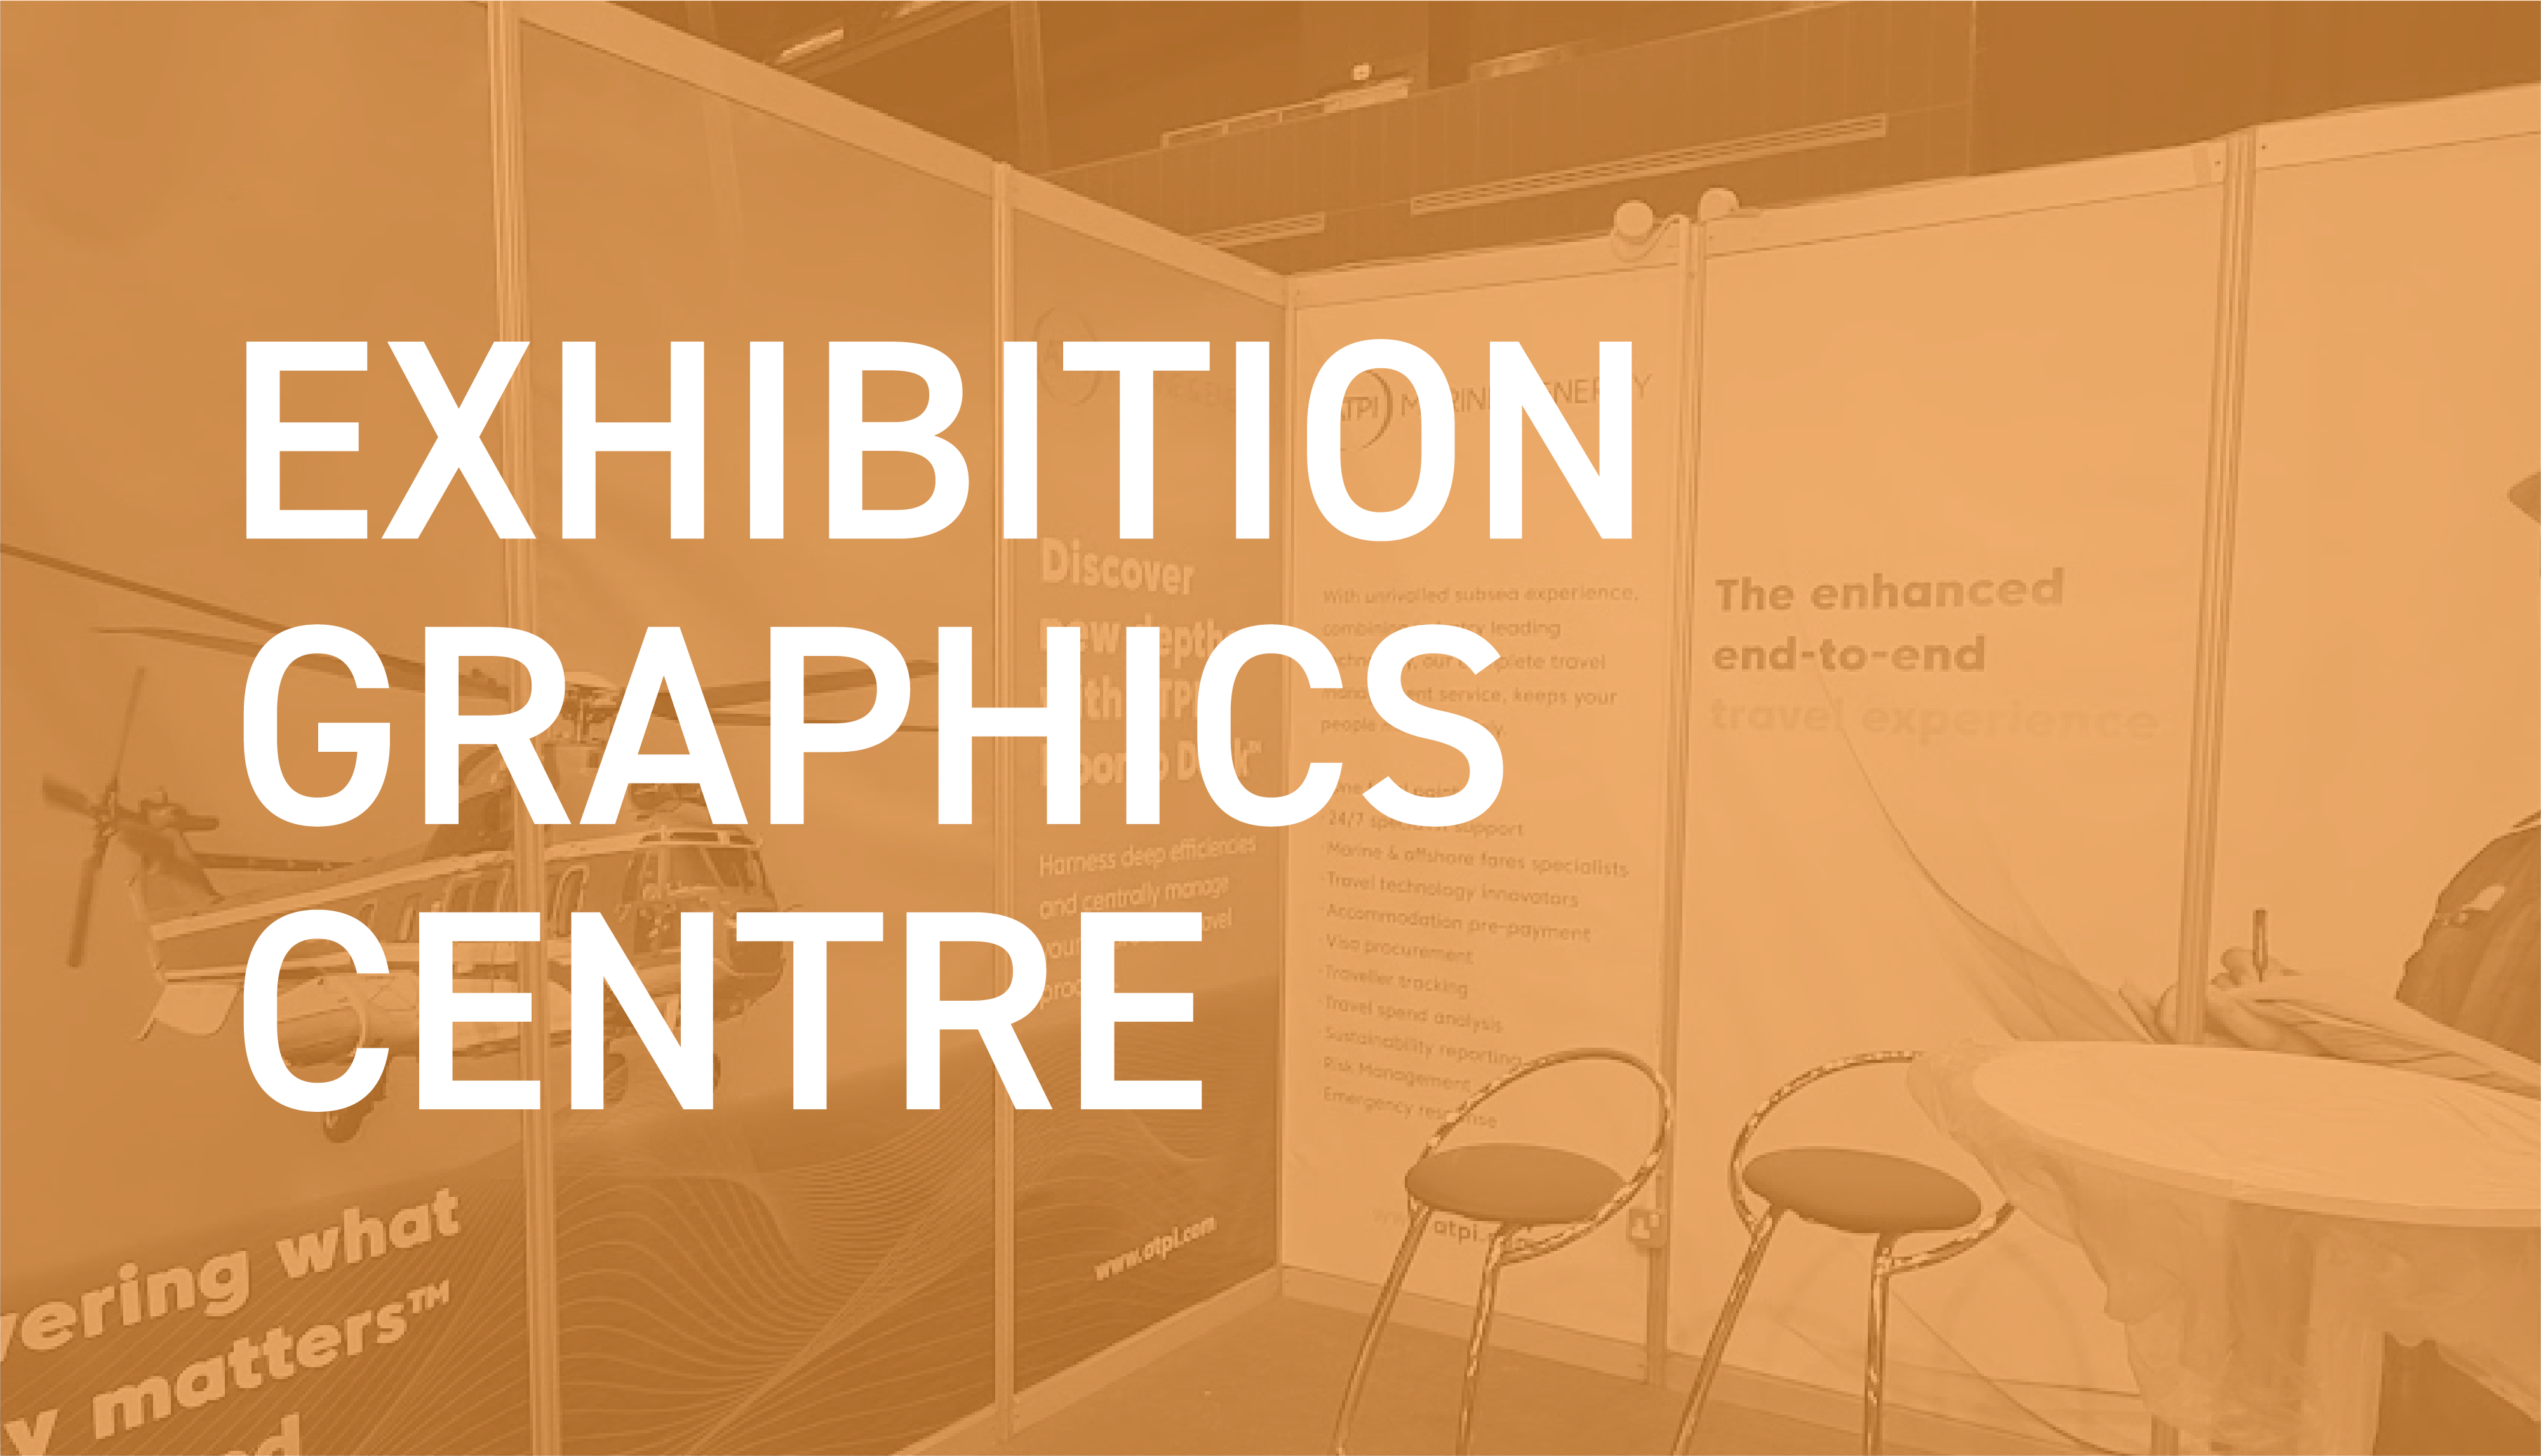 Visit the Exhibition Graphics Centre